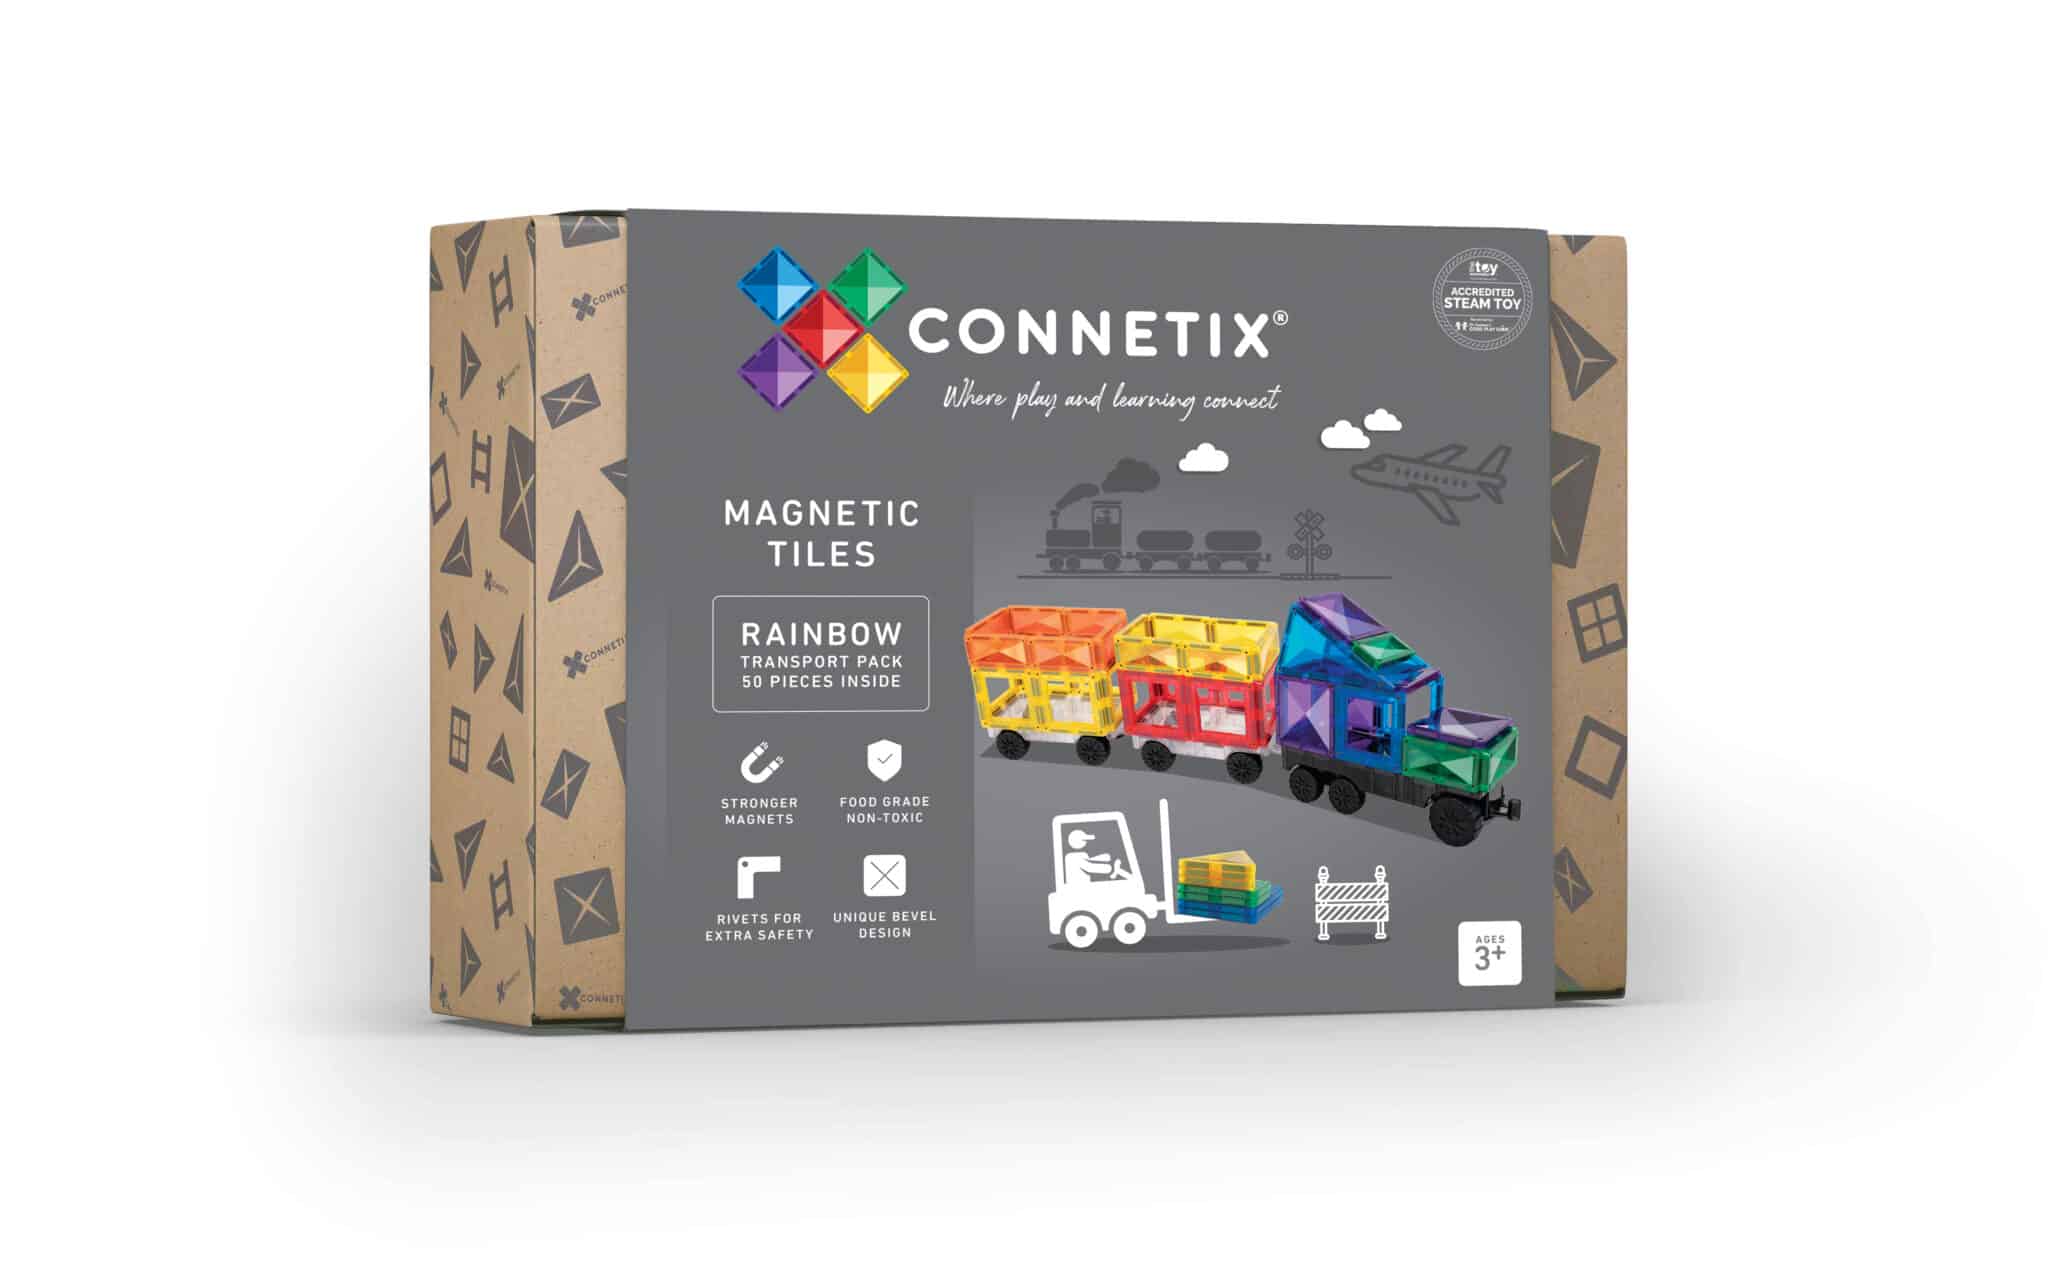 Connetix 24 pc Rainbow Mini Pack Connetix magnetklotsid - HellyK - Kvaliteetsed lasteriided, villariided, barefoot jalatsid